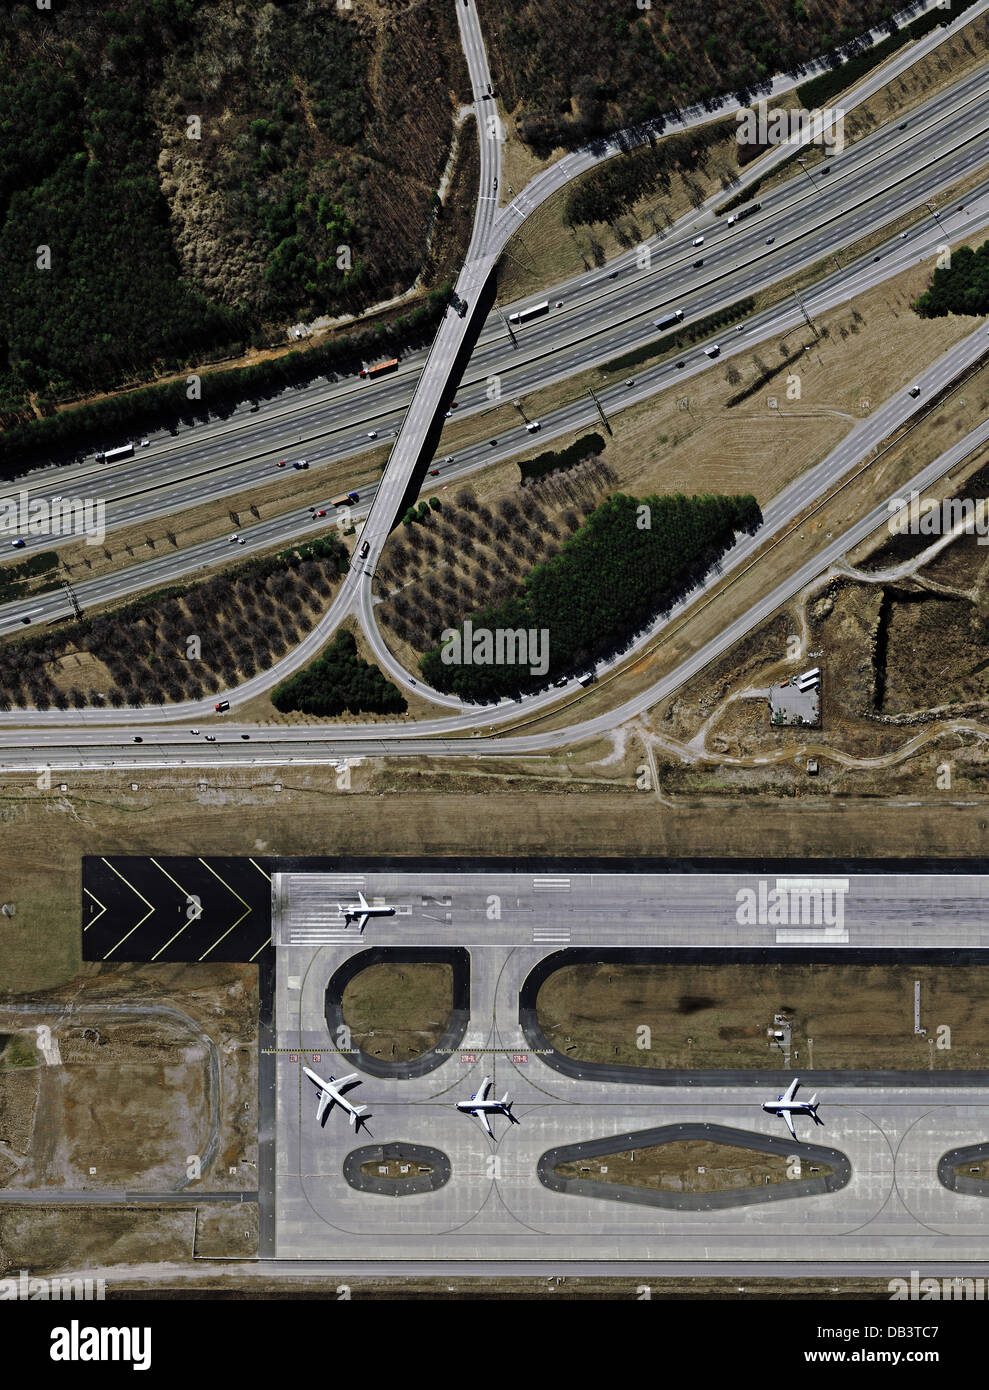 fotografia aerea di aerei che tassano per il decollo alla soglia della pista Foto Stock